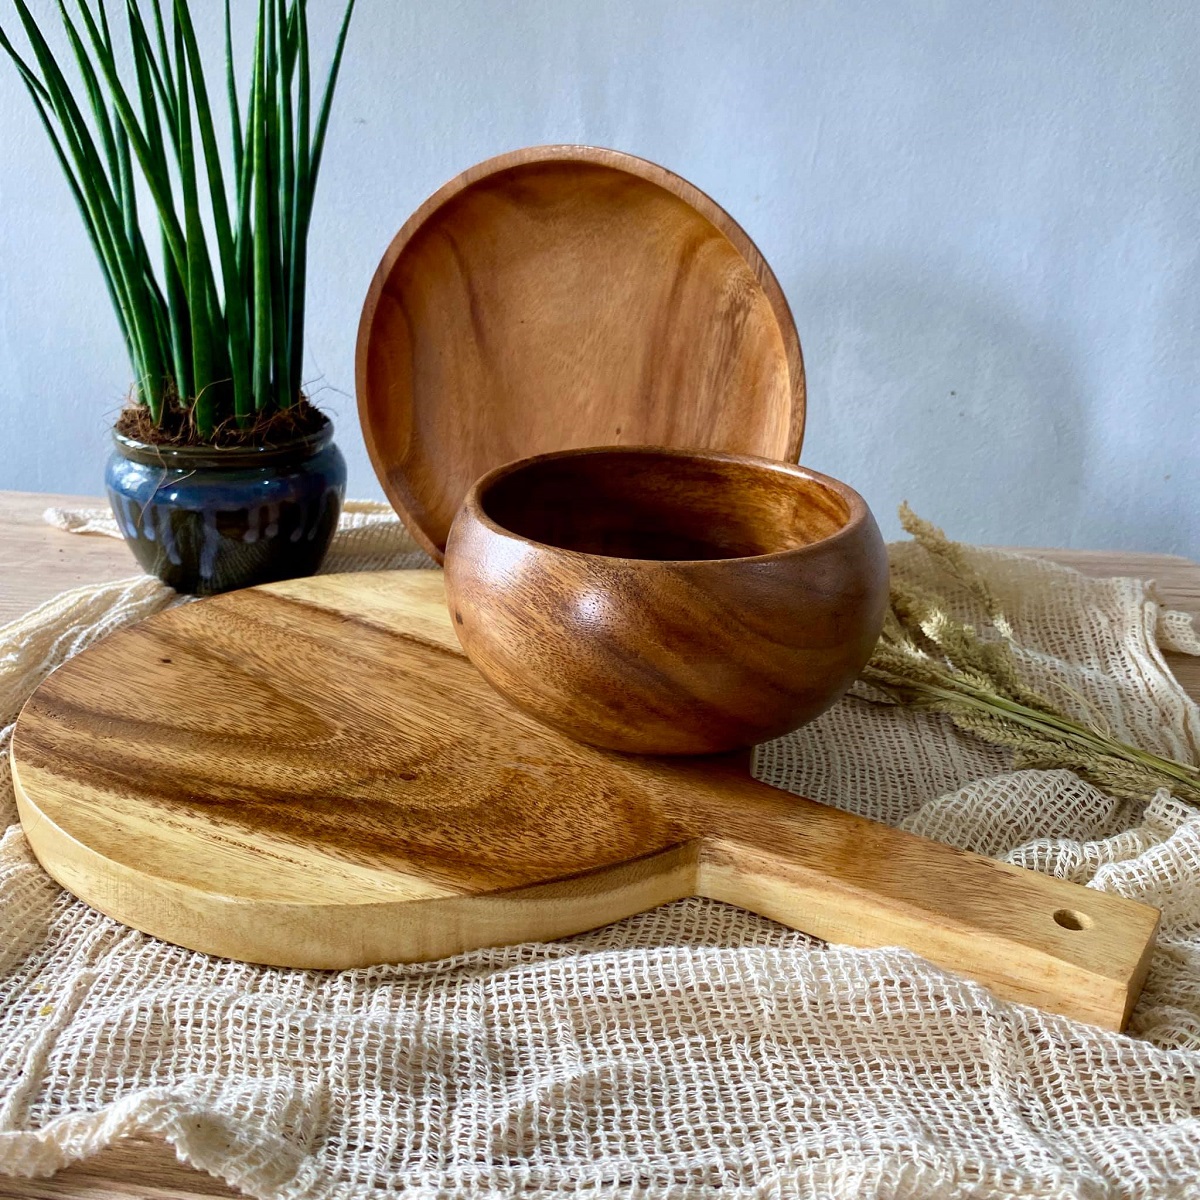 Philippine souvenir - wooden tableware